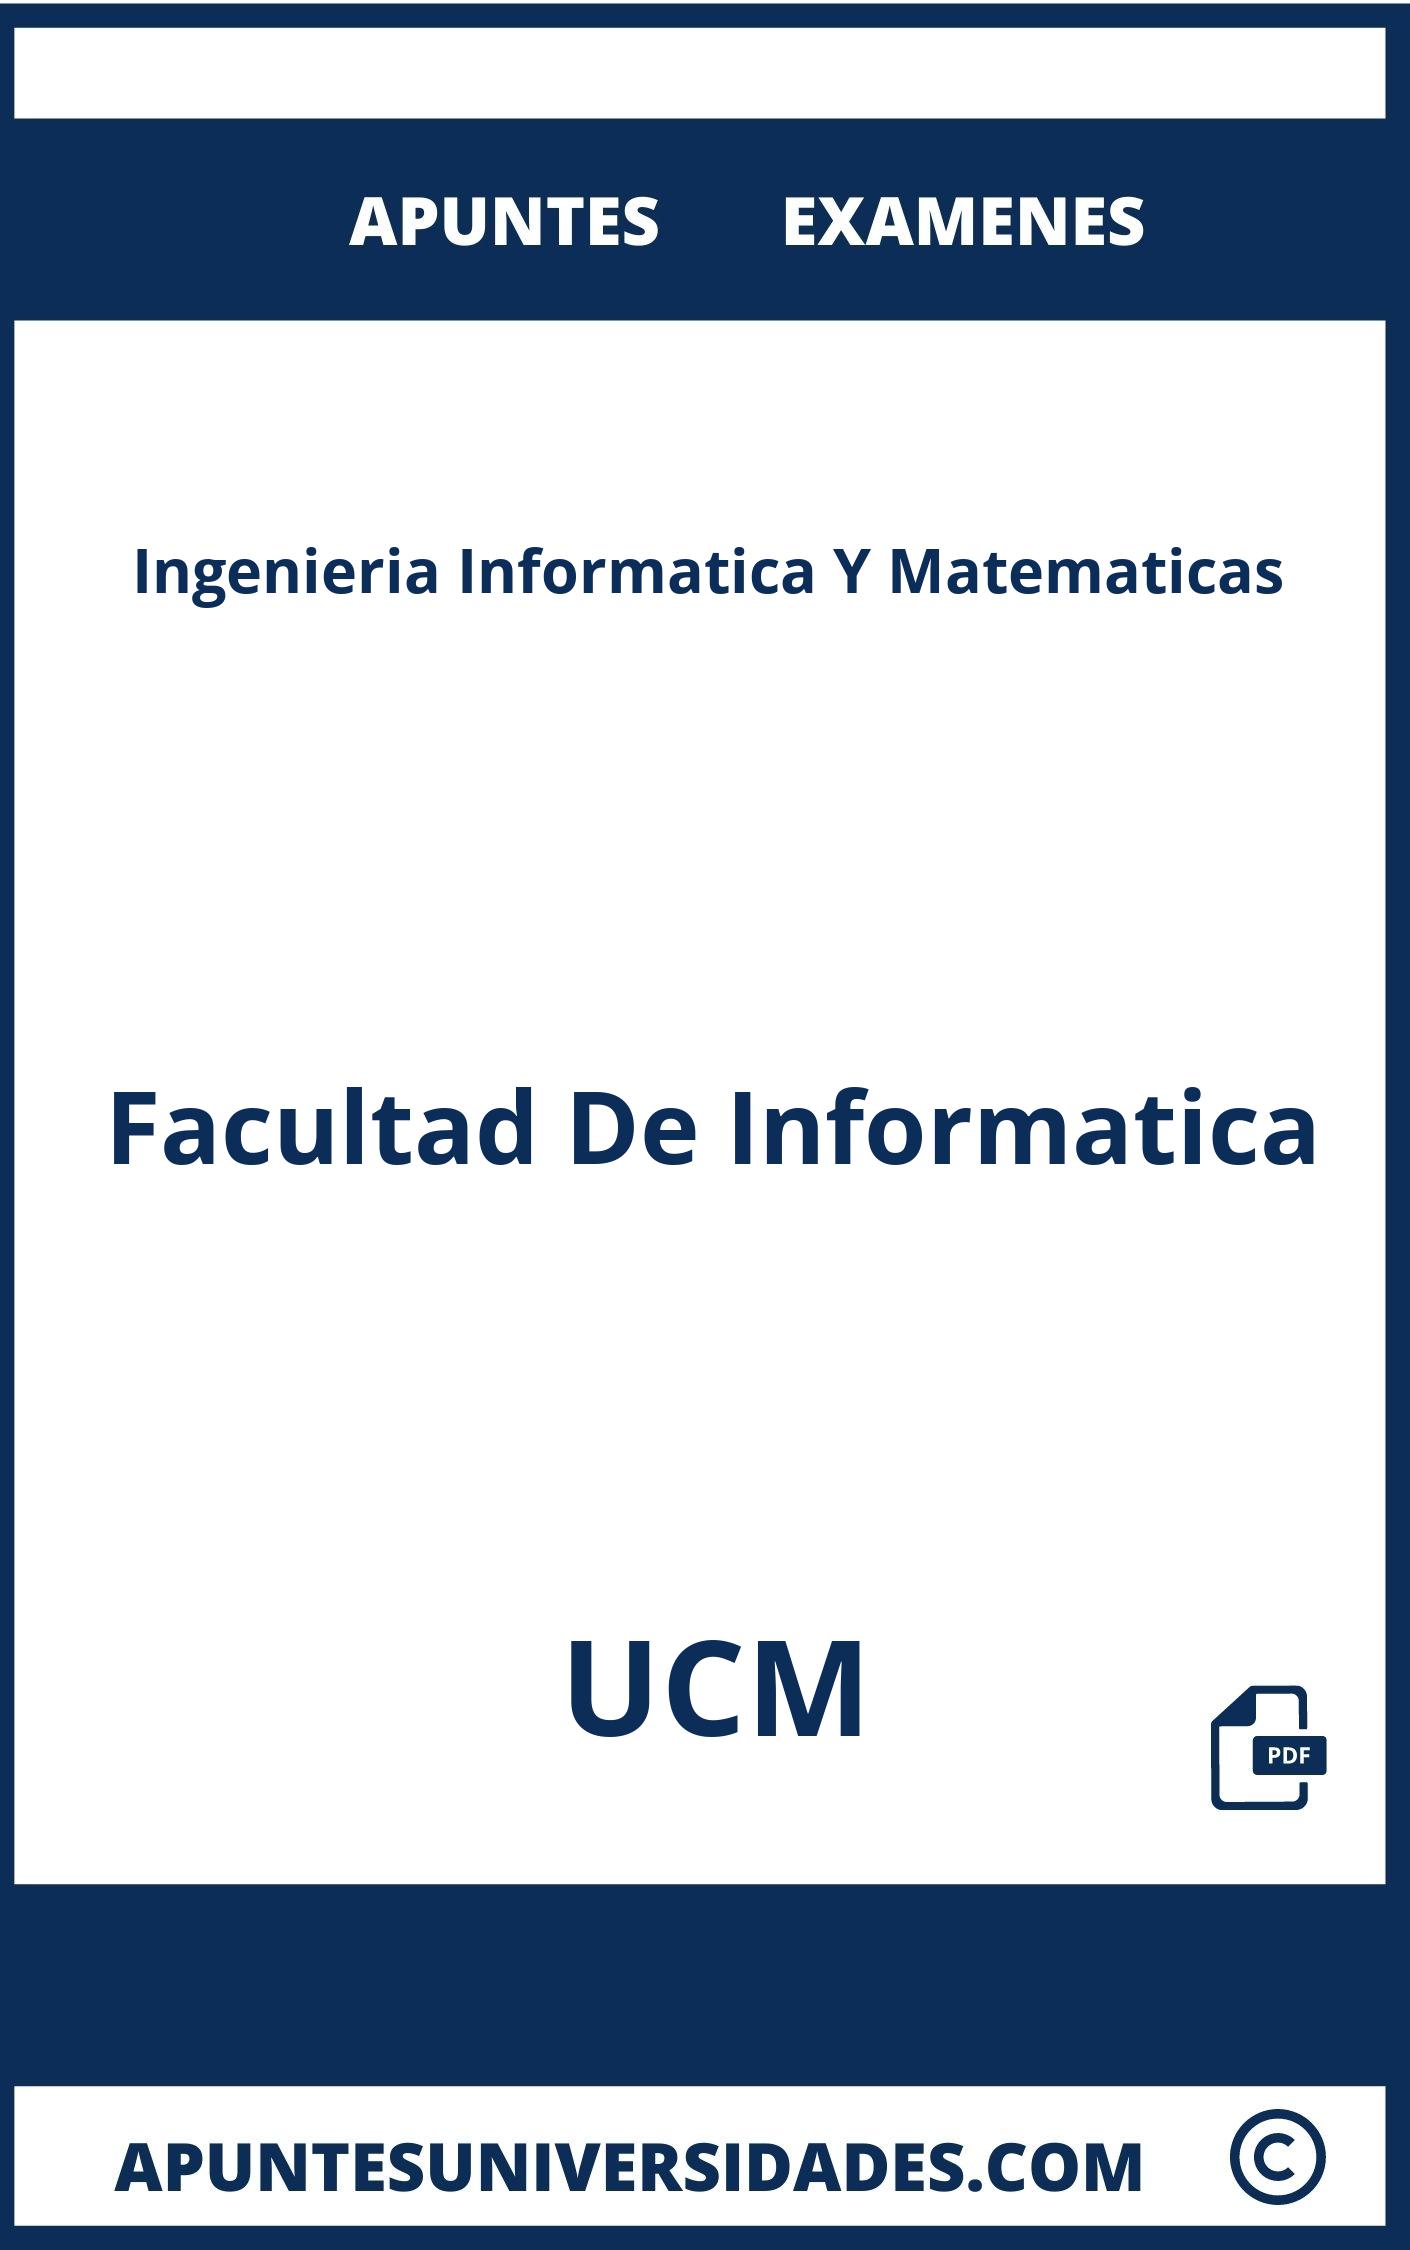 Examenes y Apuntes de Ingenieria Informatica Y Matematicas UCM